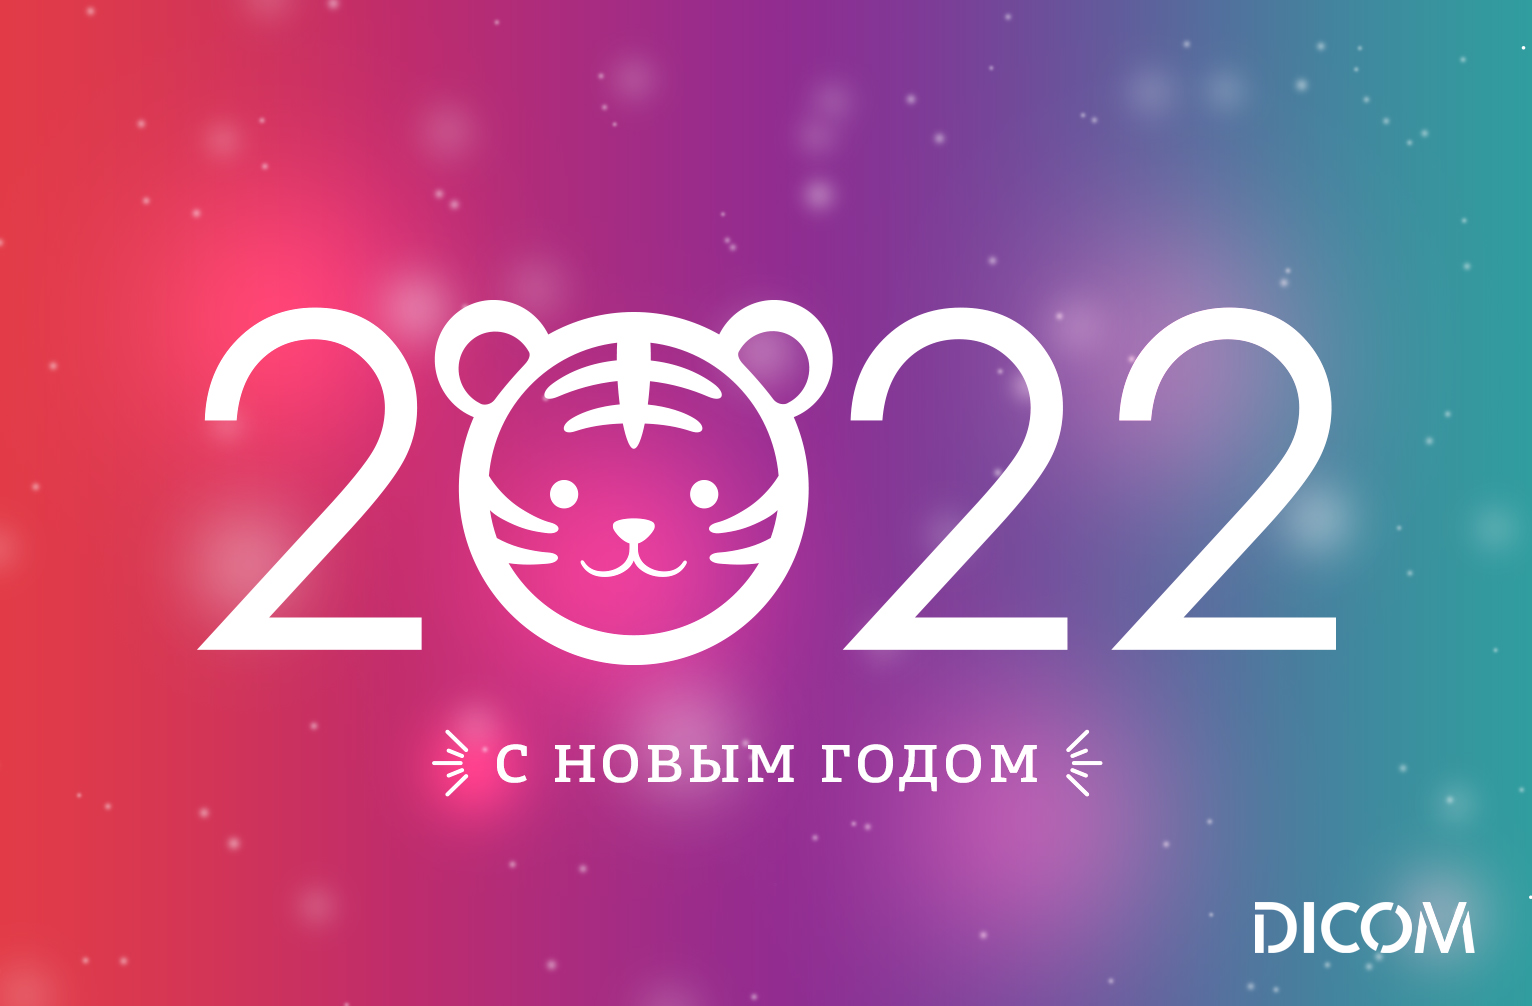 Режим работы в новогодние праздники 2022 года